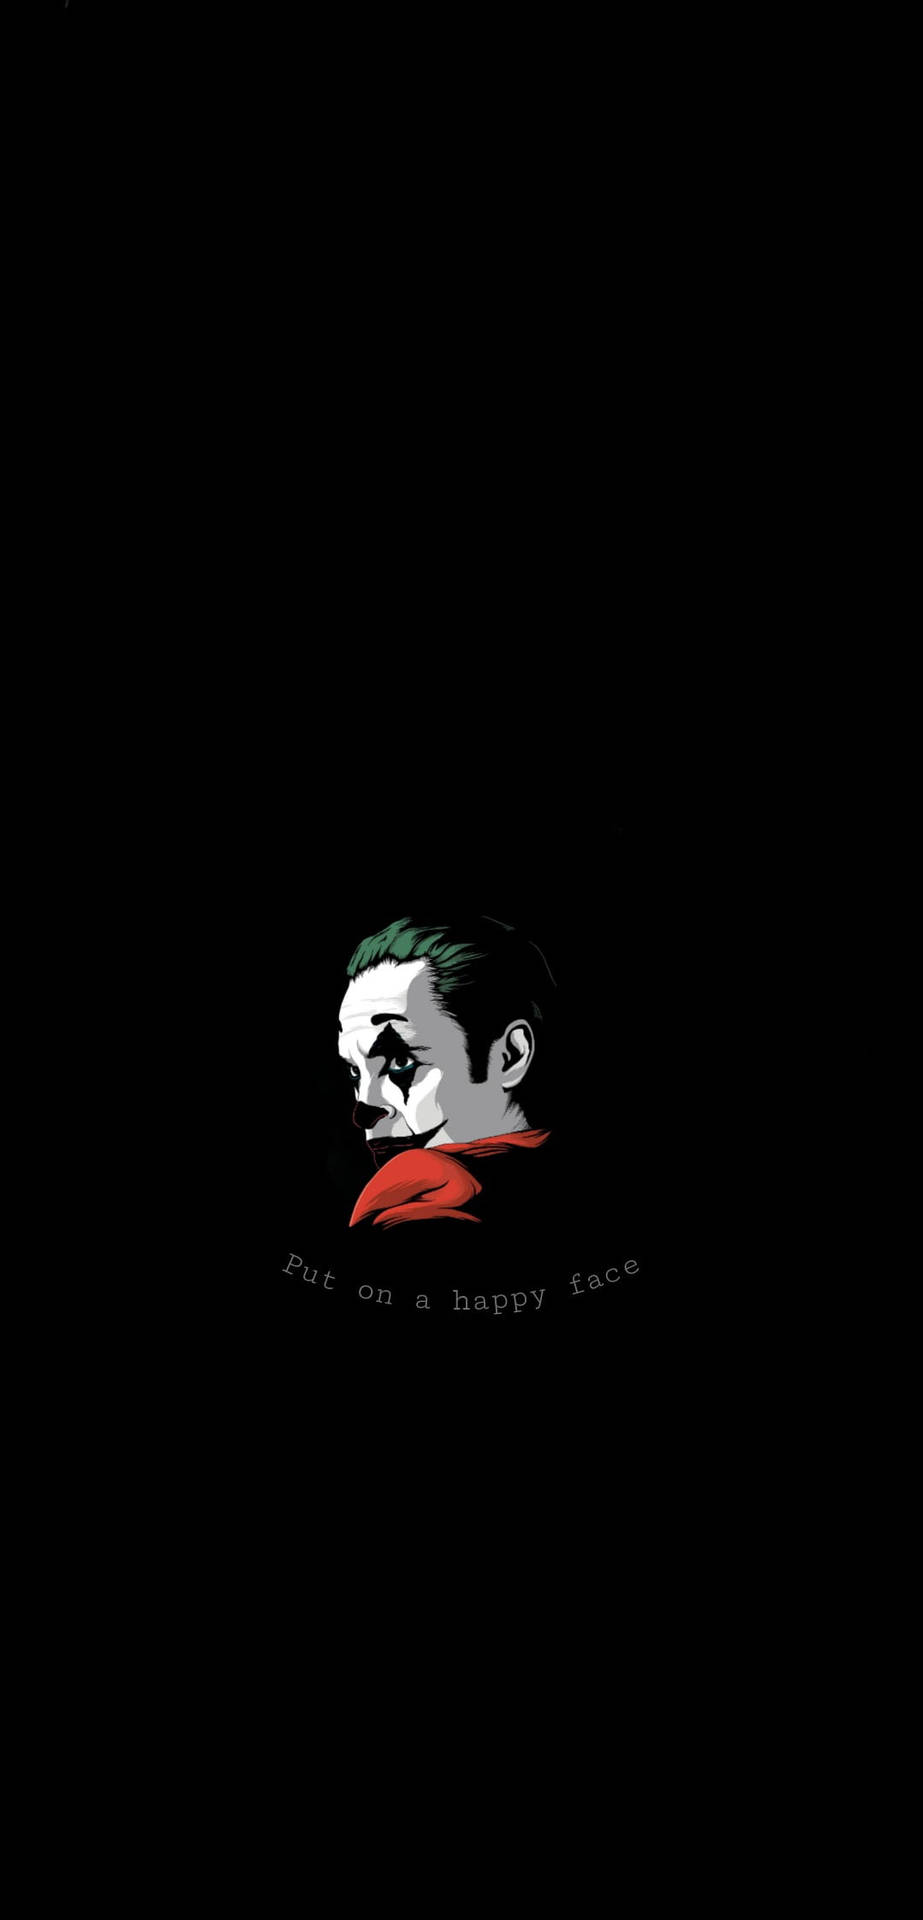 Sad Quote The Joker Background